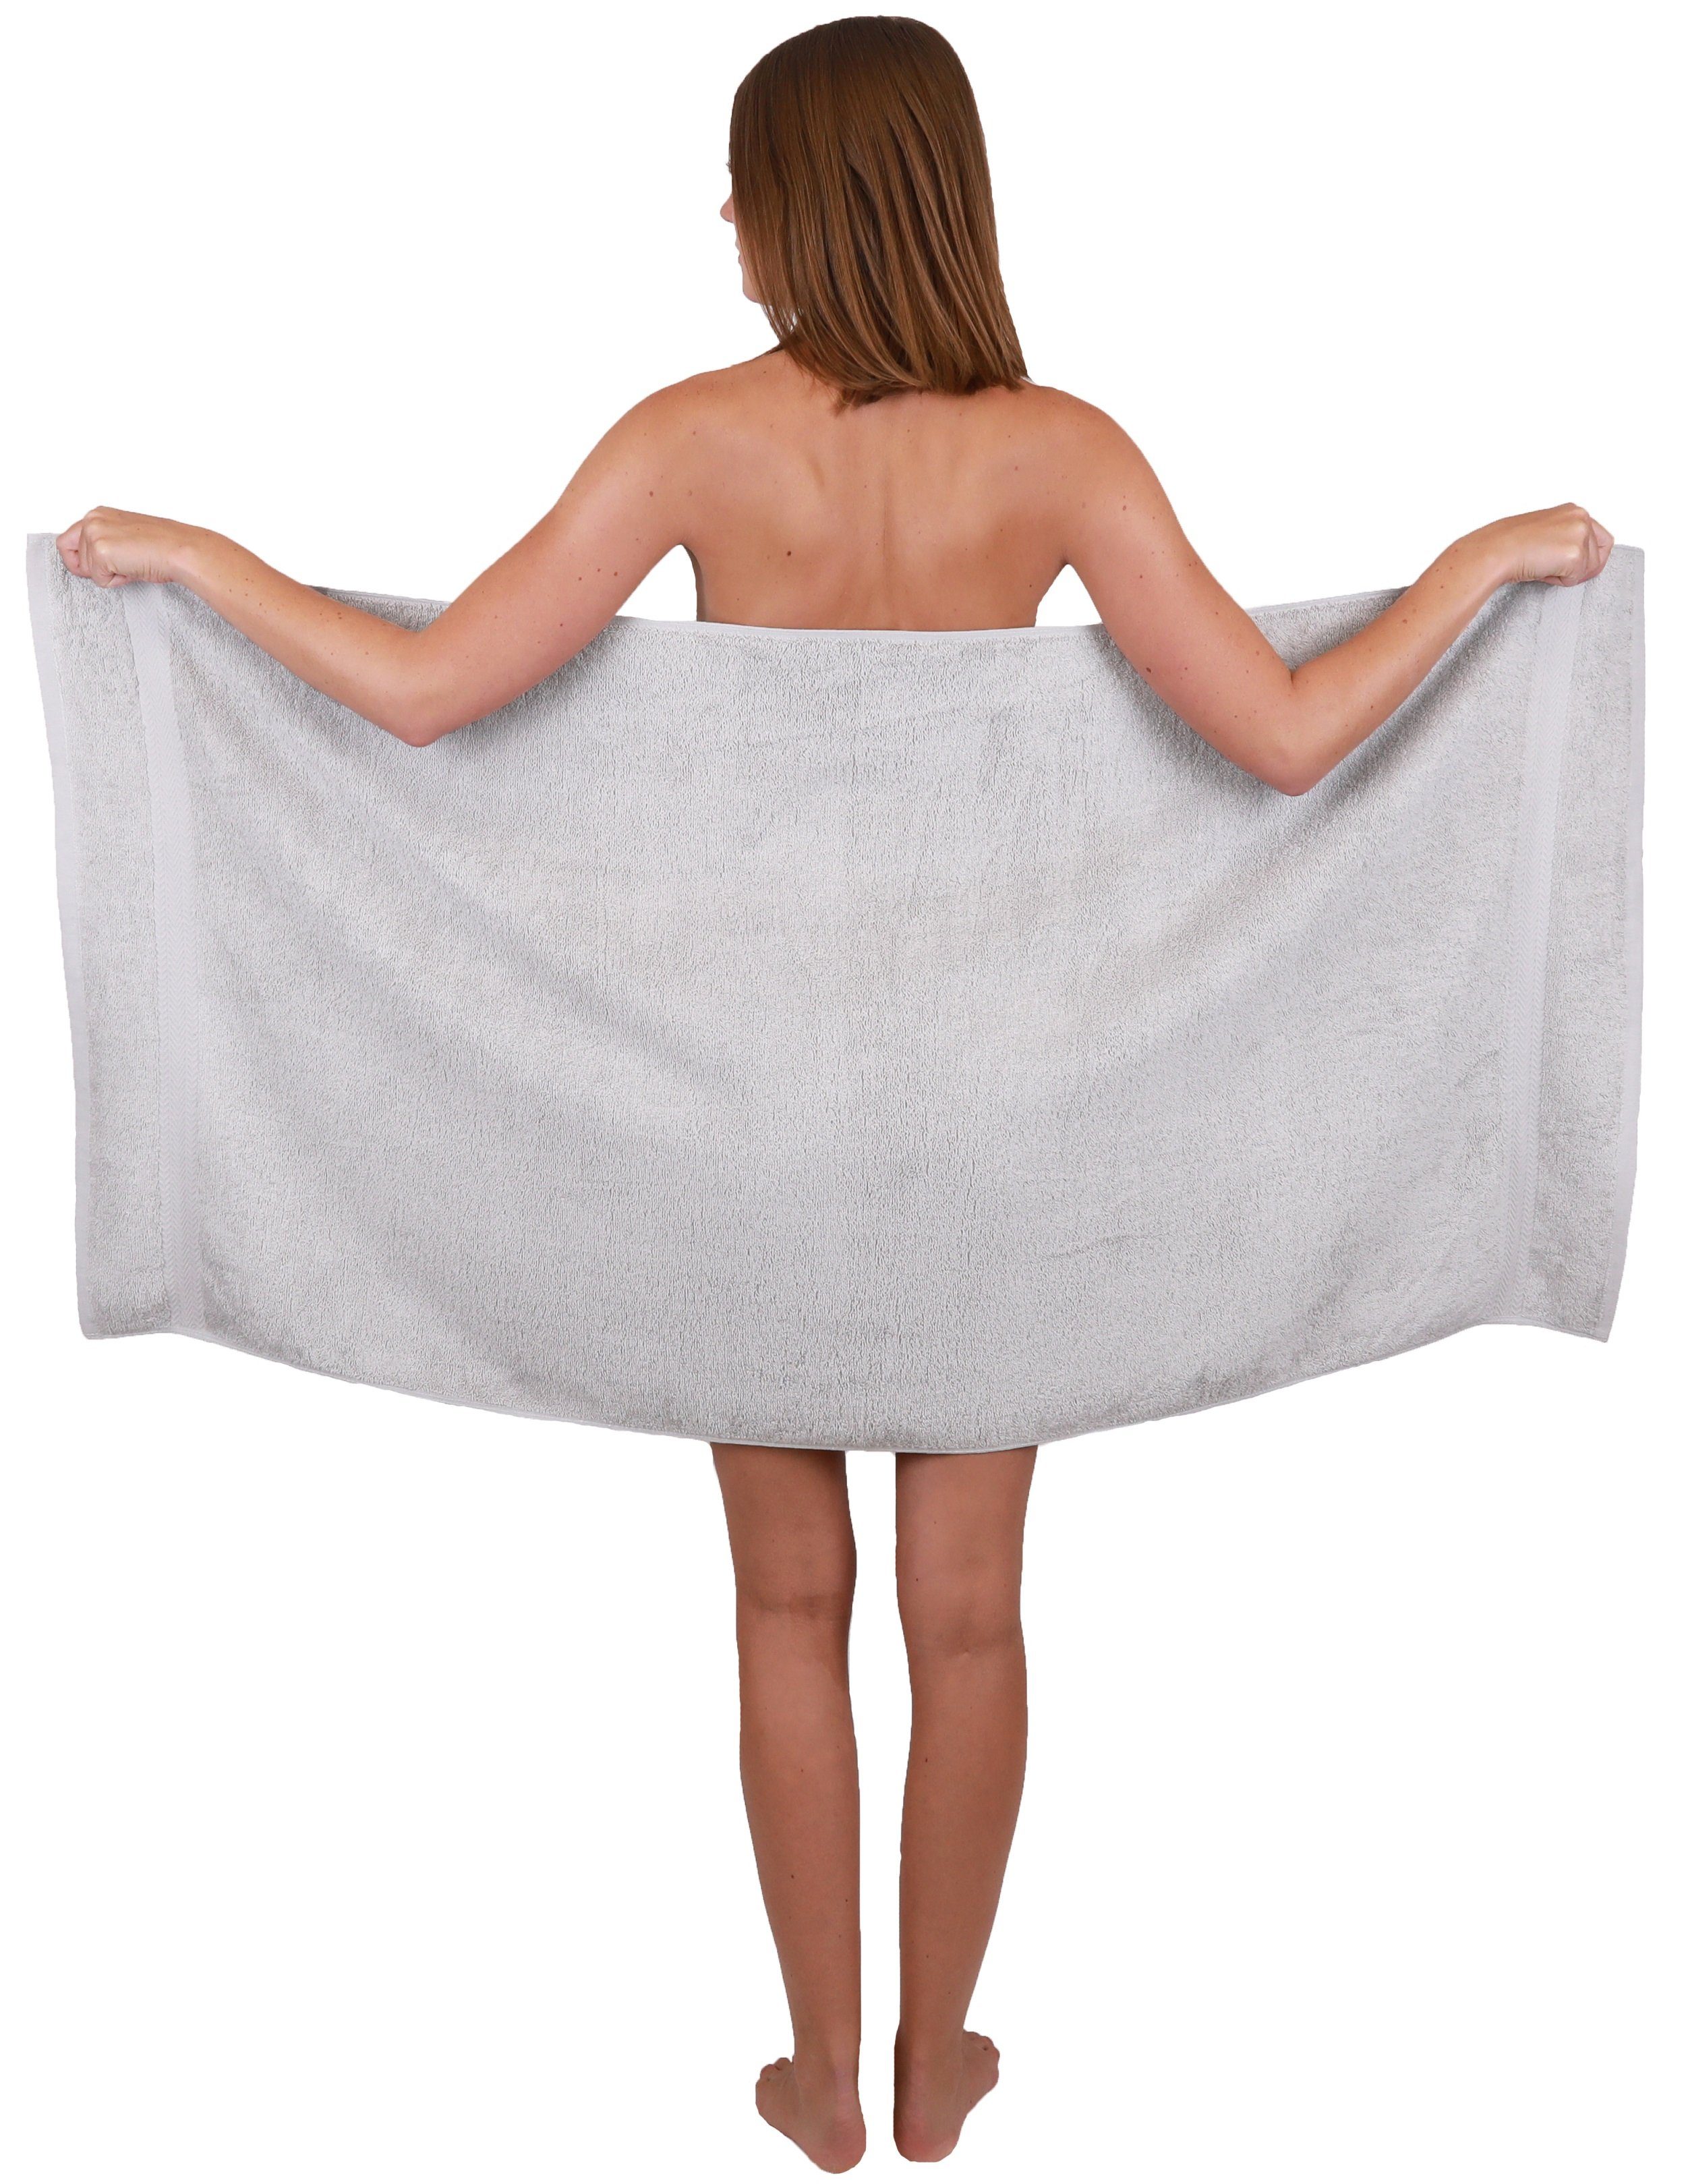 Farbe und weiß, Baumwolle Baumwolle Set Premium Betz 100% 100% Handtücher Silbergrau Duschtücher 2 6-TLG. Handtuch-Set Handtuch 4